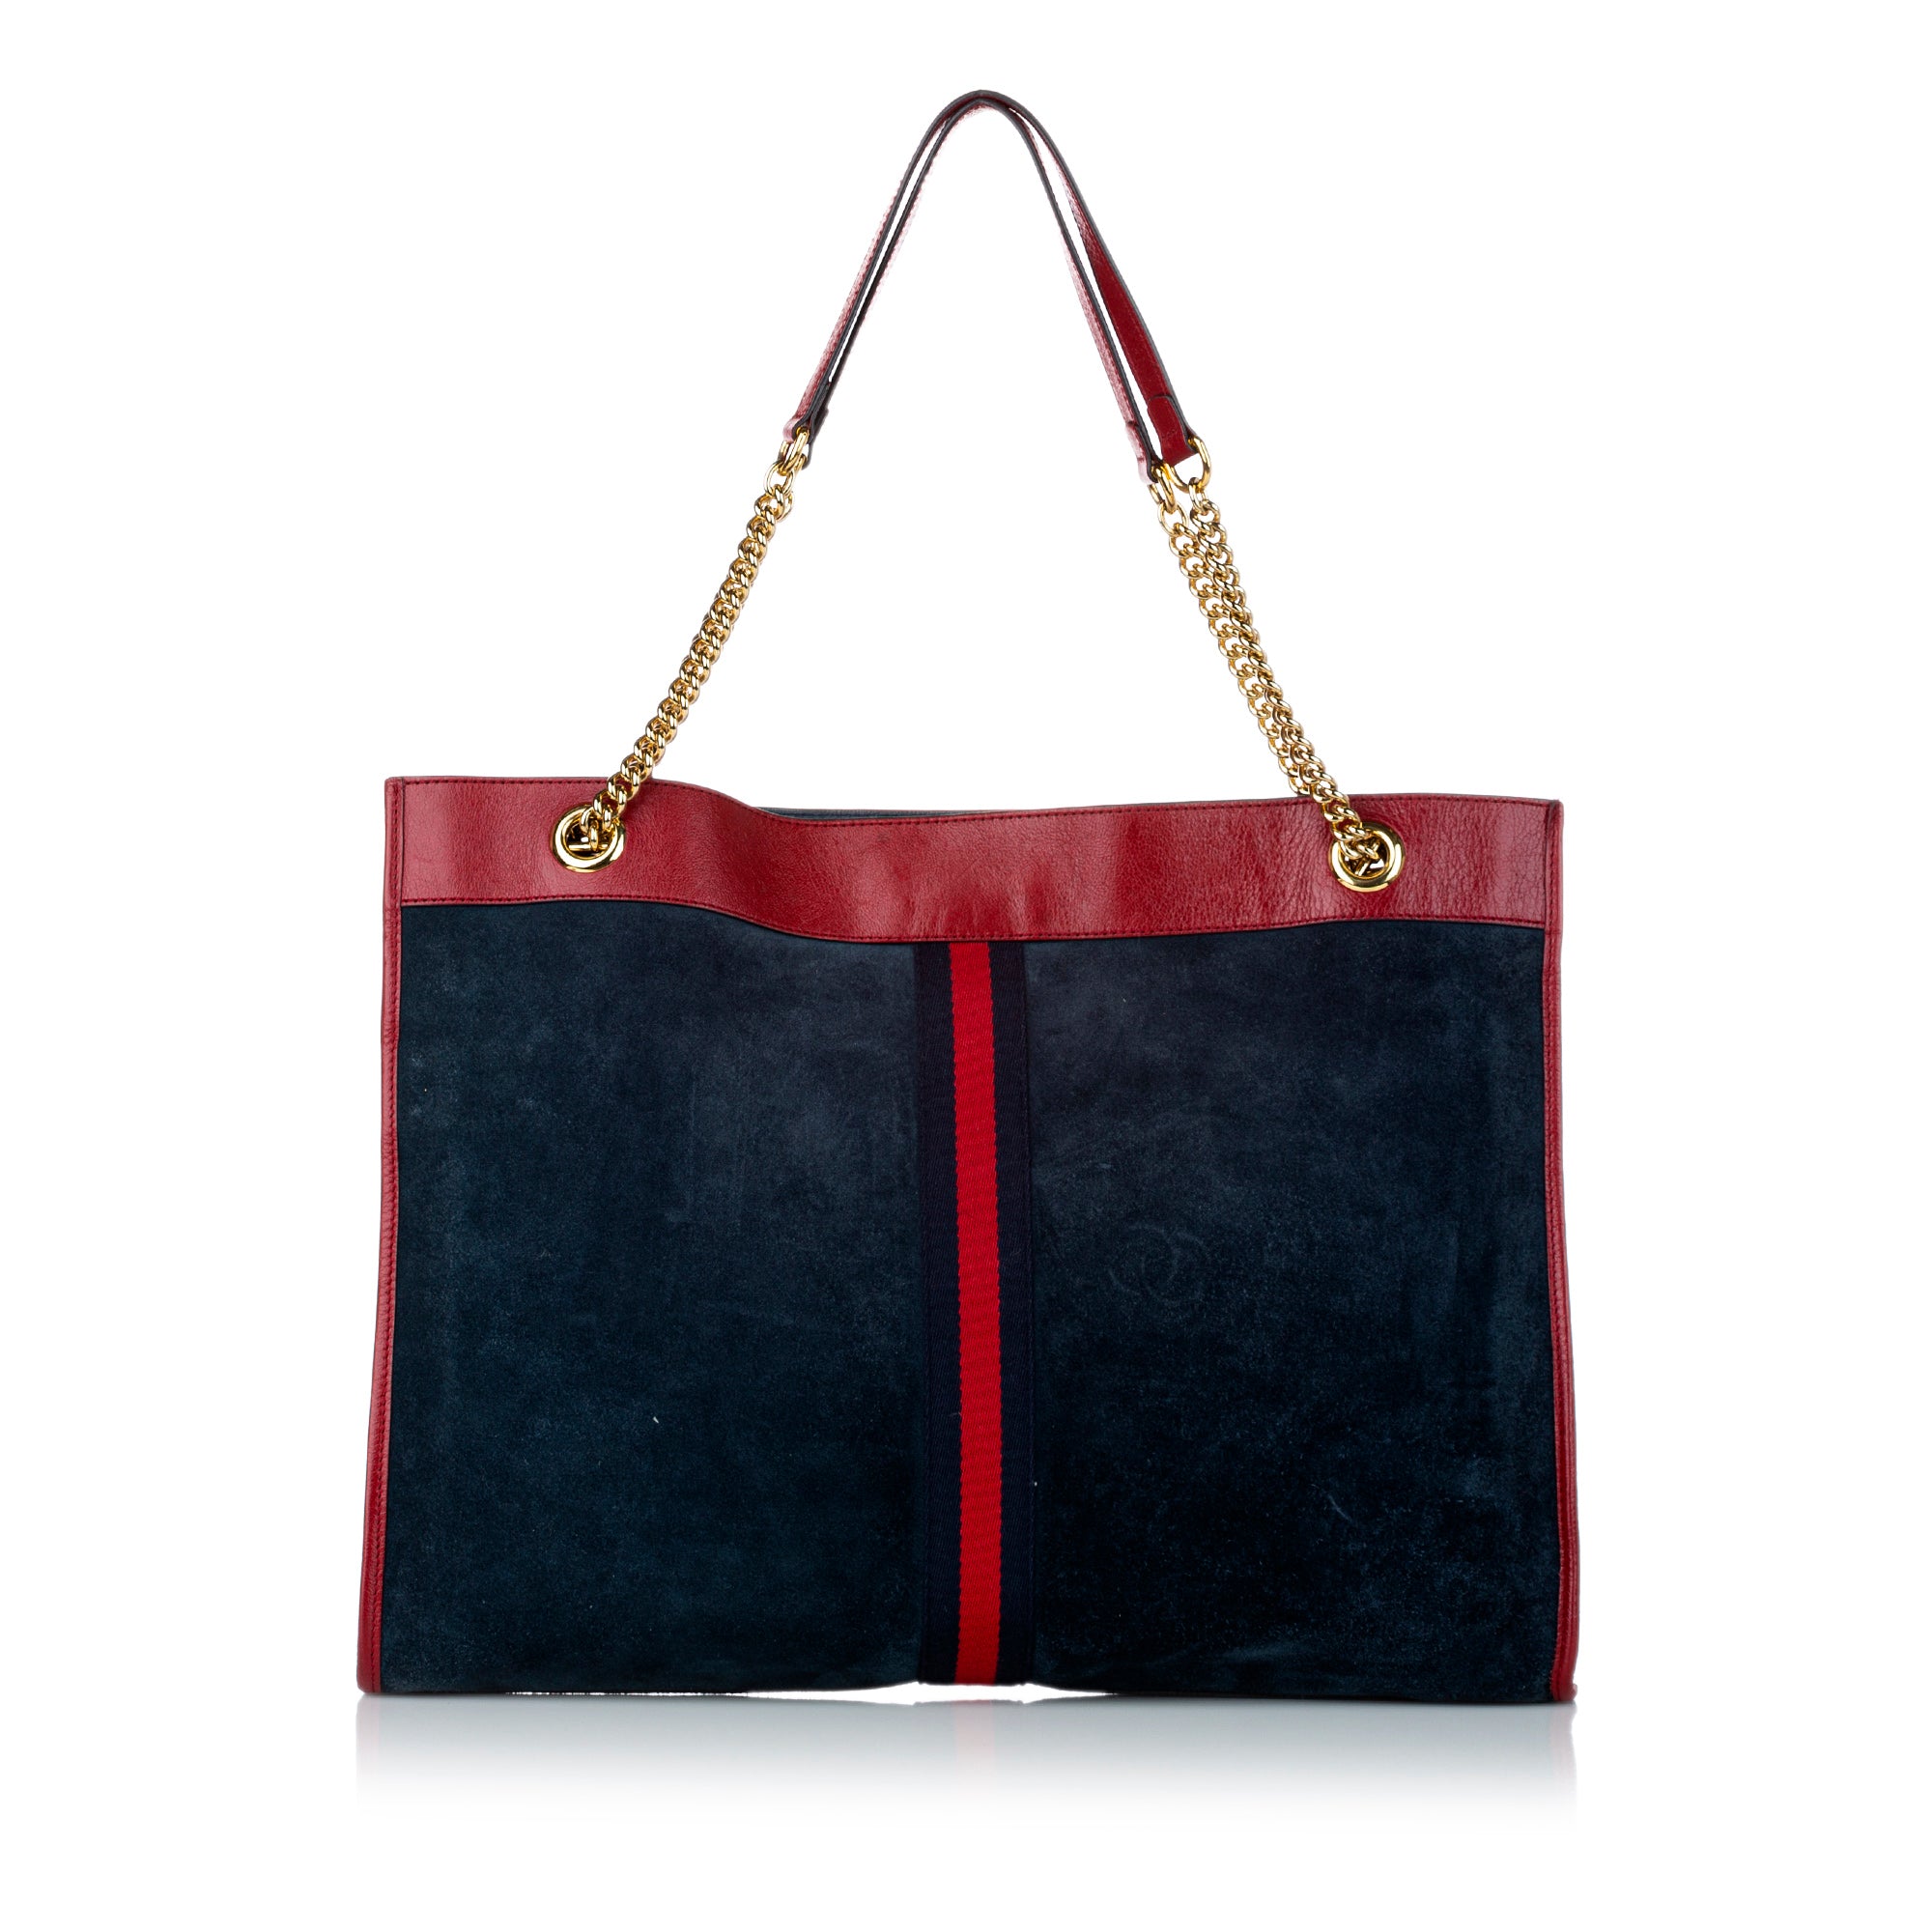 Blue Gucci Rajah Suede Tote Bag - Designer Revival